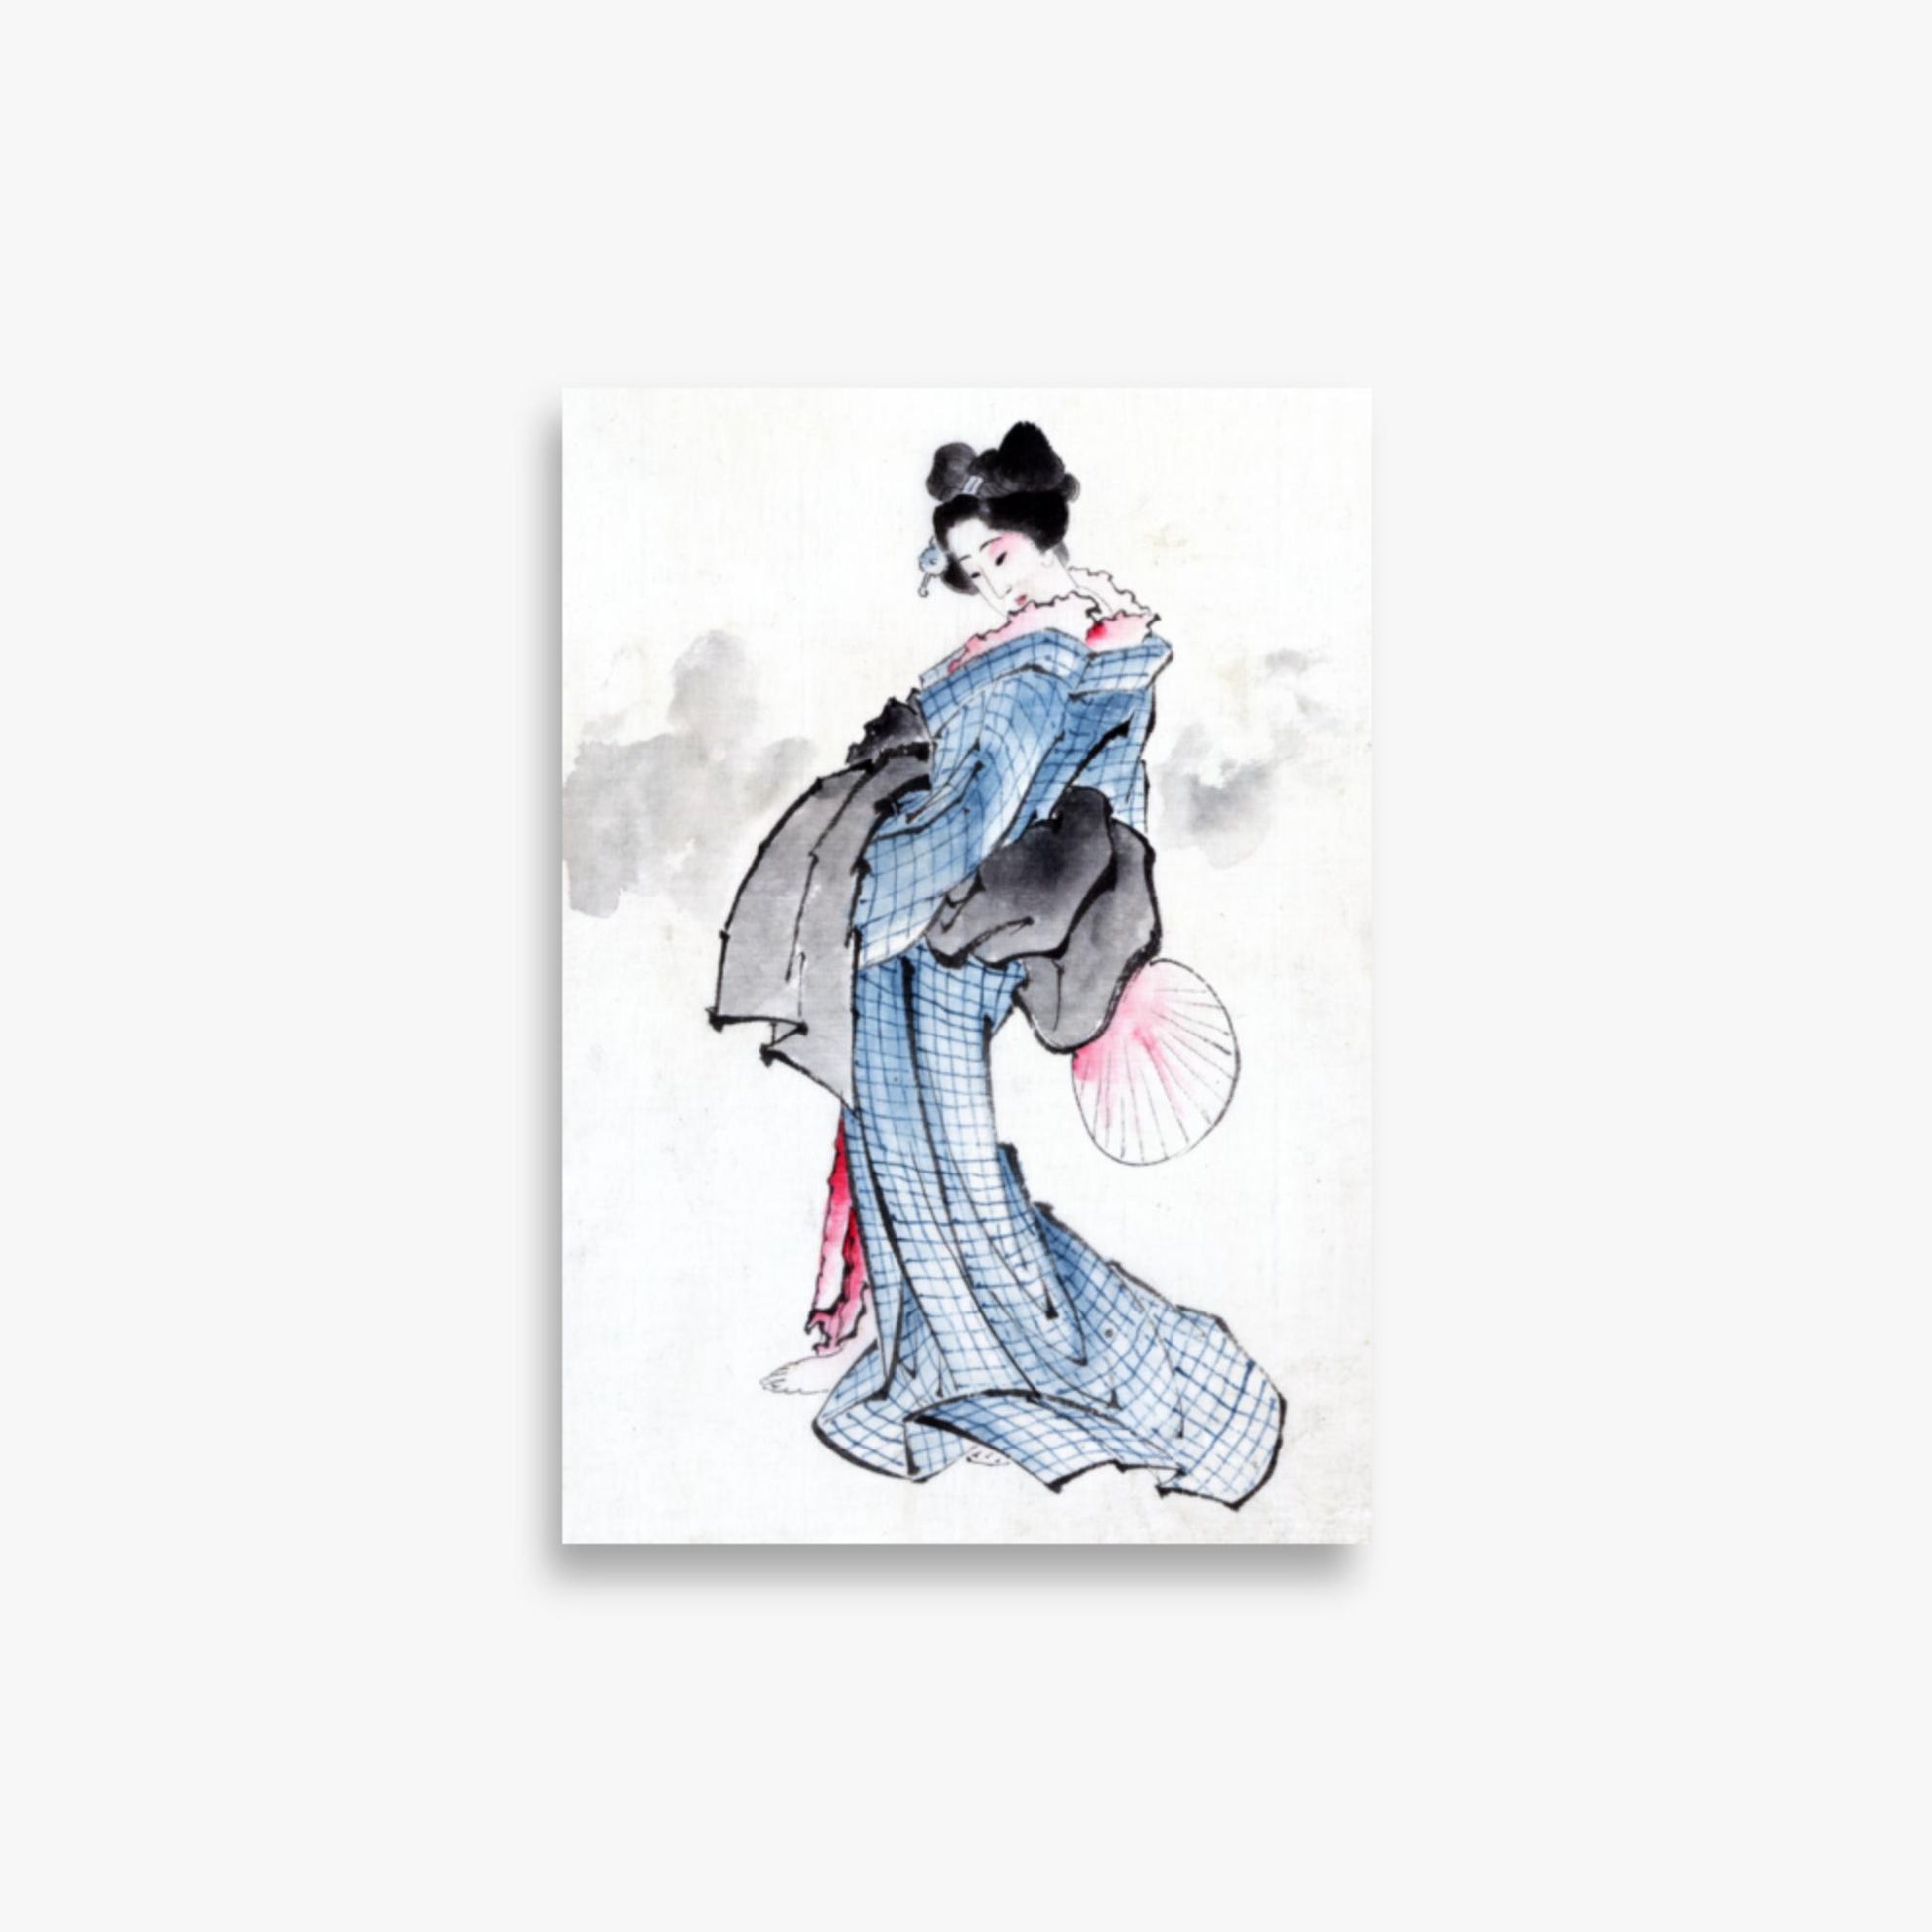 Katsushika Hokusai - Illustration of a Japanese Woman in Kimono 21x30 cm Poster